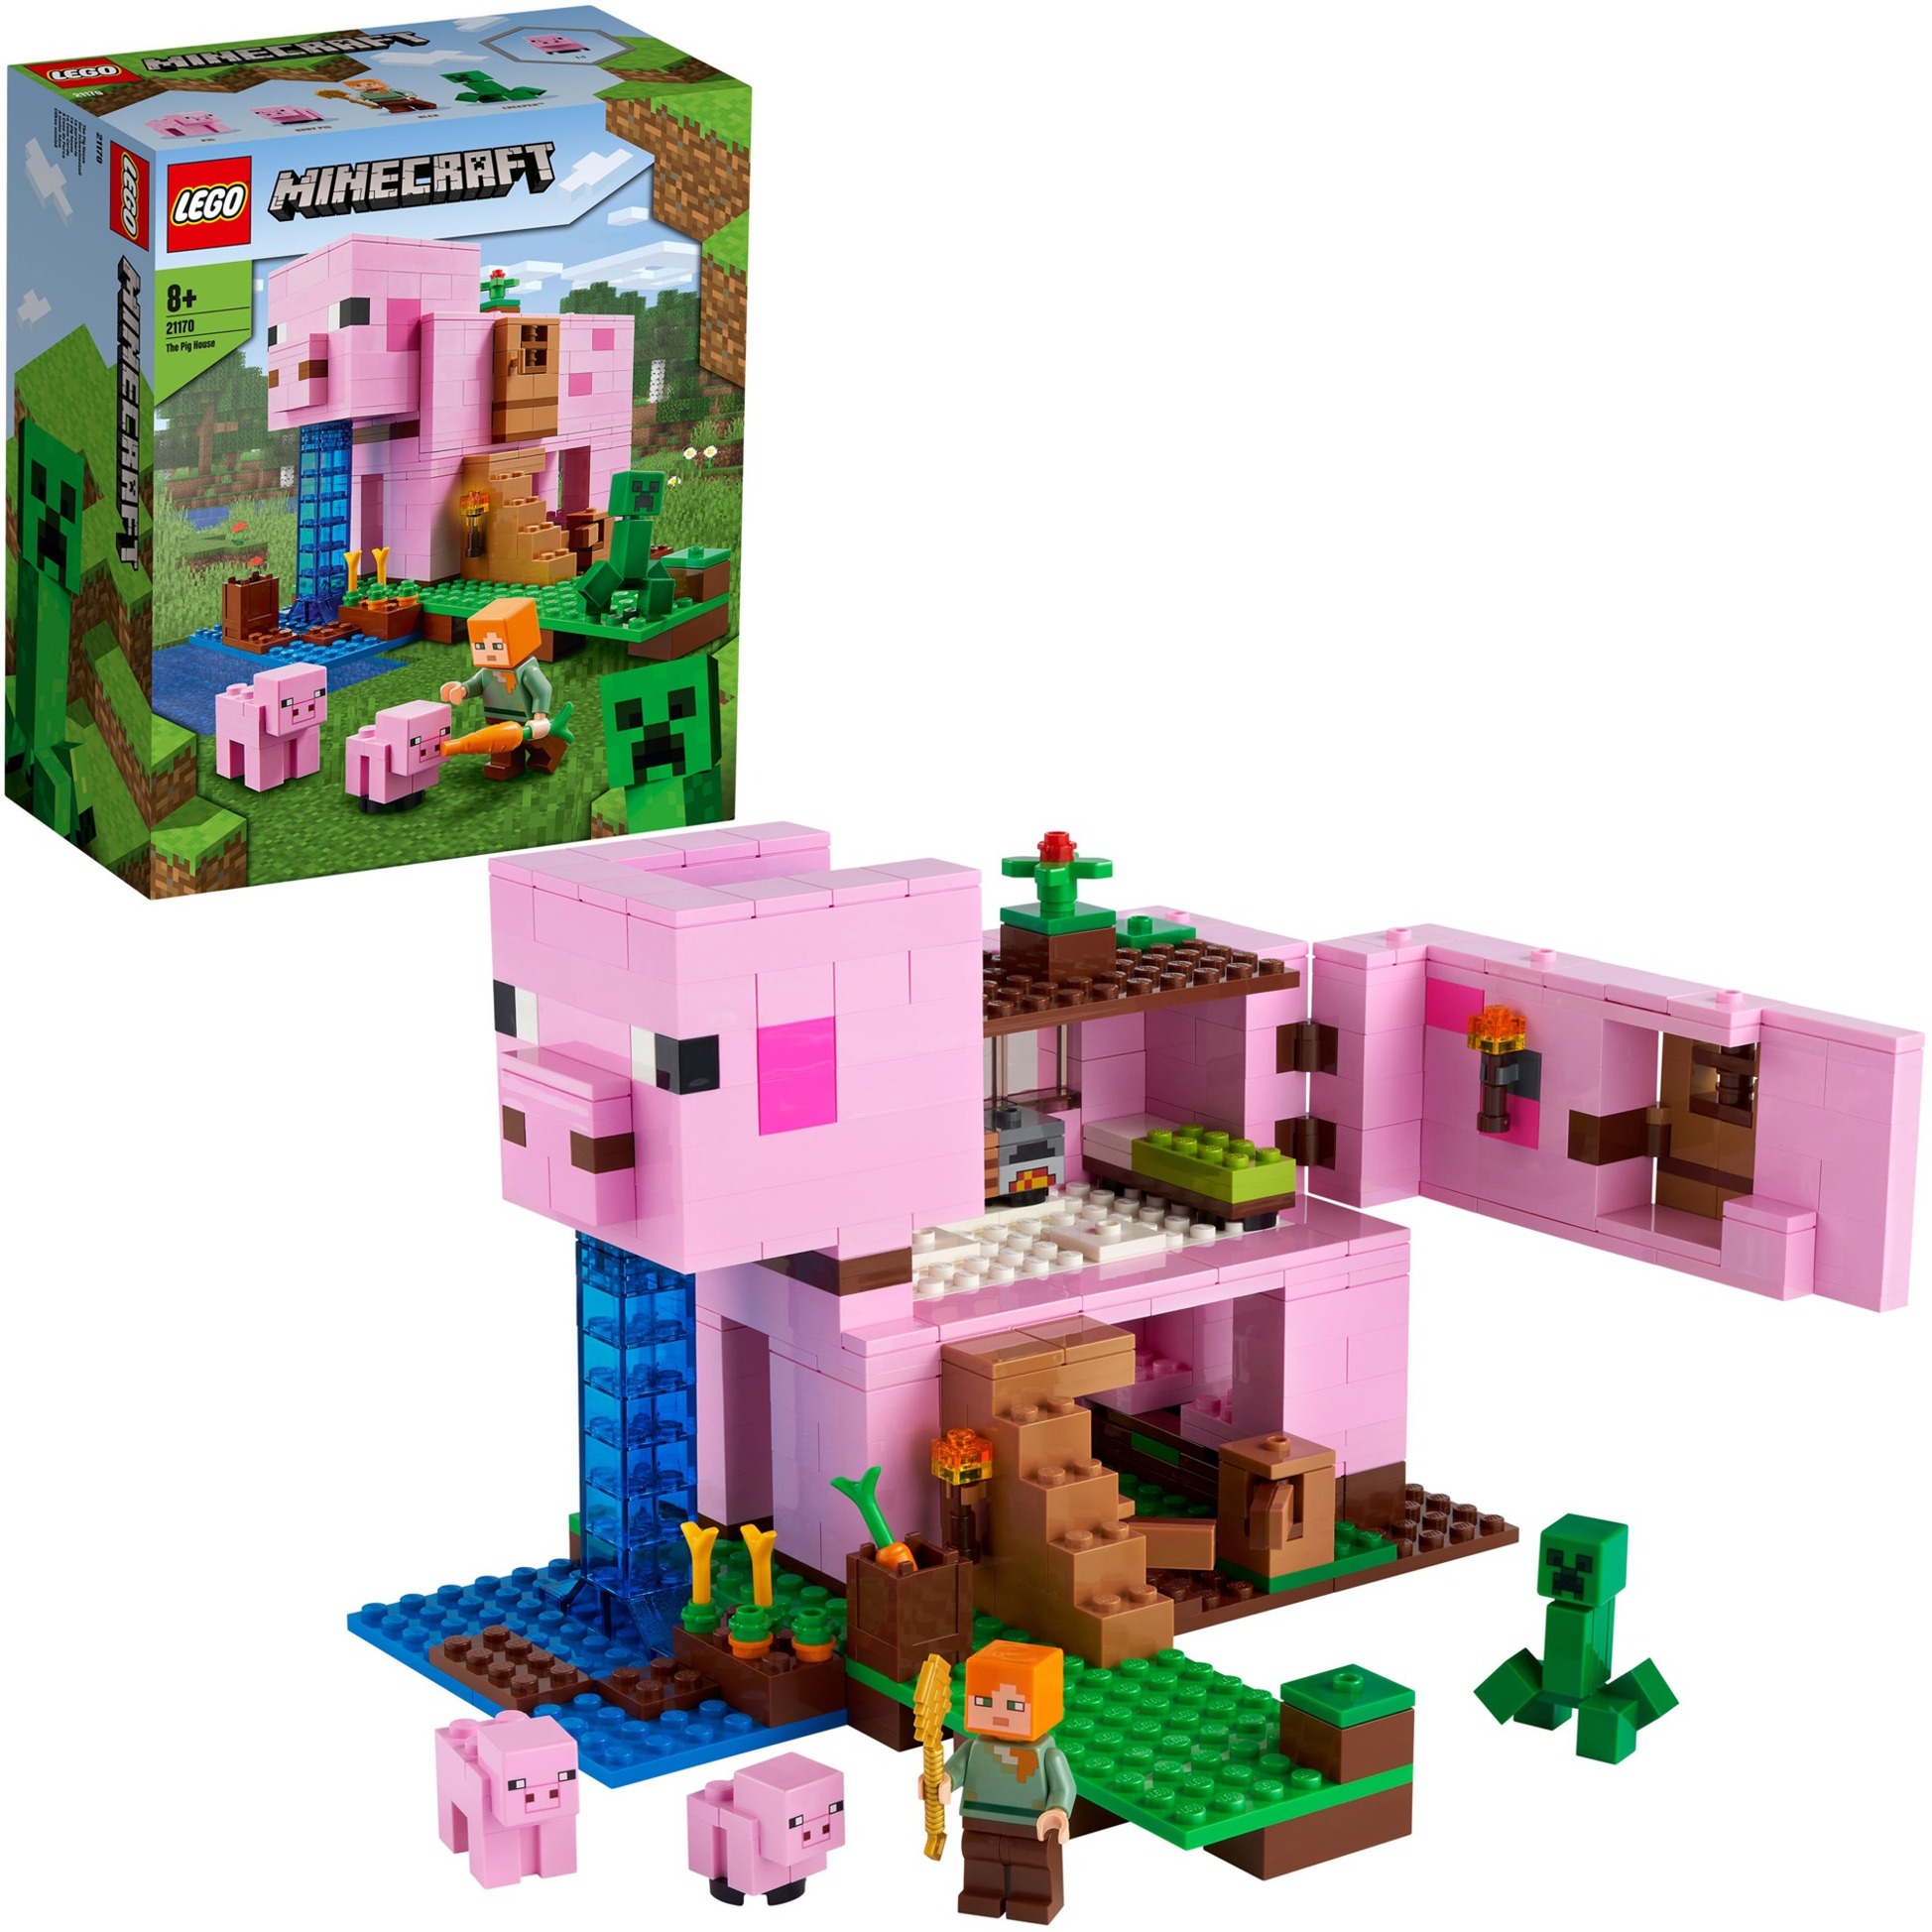 Image of Alternate - 21170 Minecraft Das Schweinehaus, Konstruktionsspielzeug online einkaufen bei Alternate